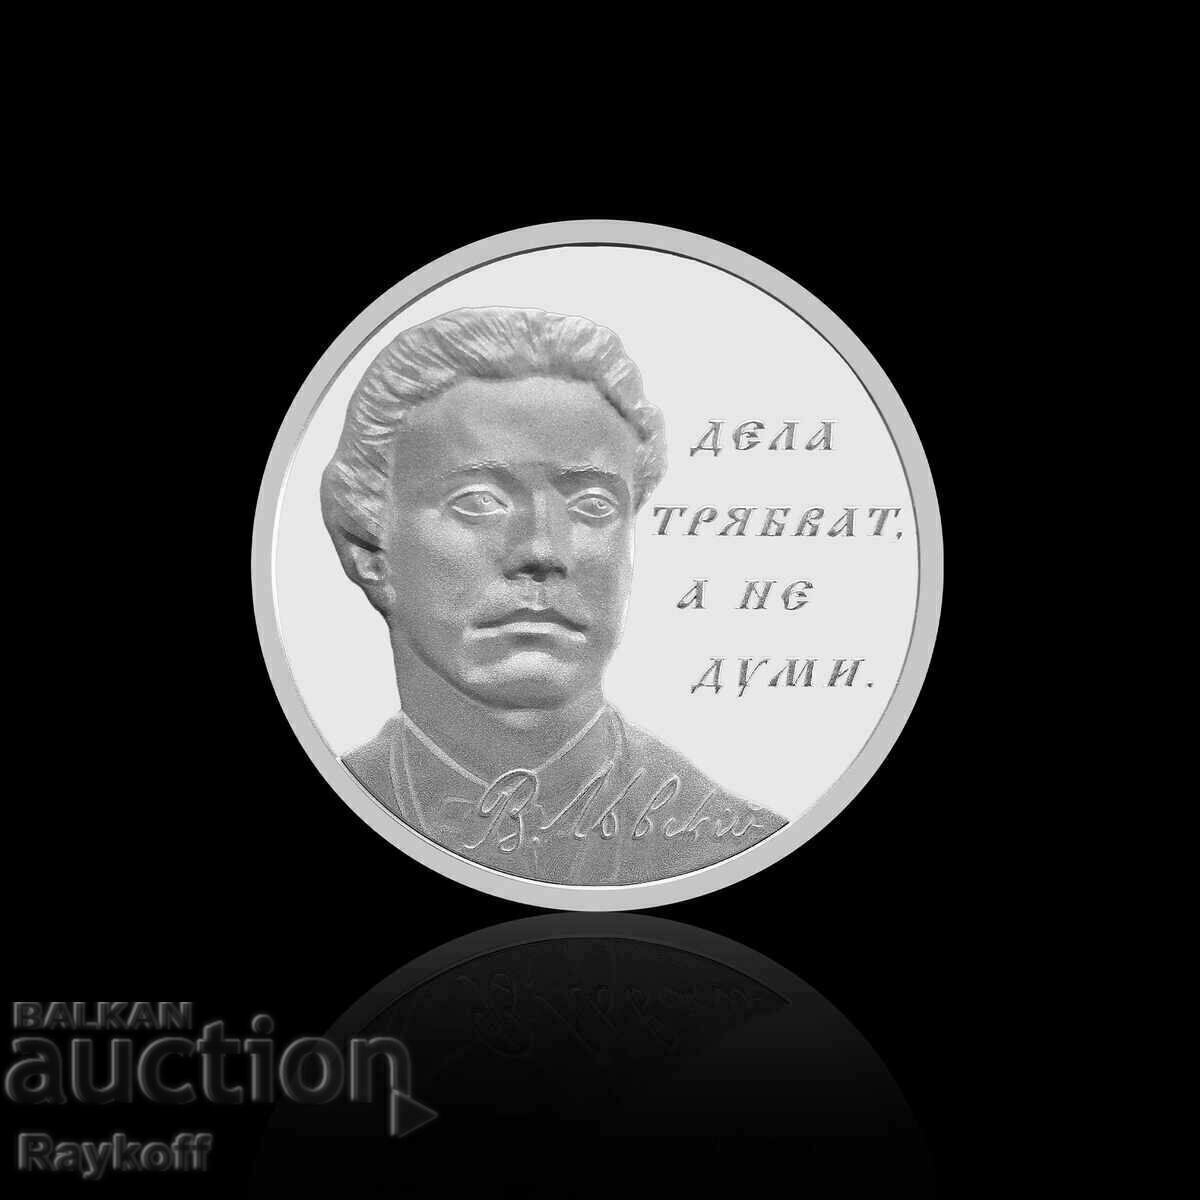 Сребърен медал “Васил Левски - 150 години безсмъртие”